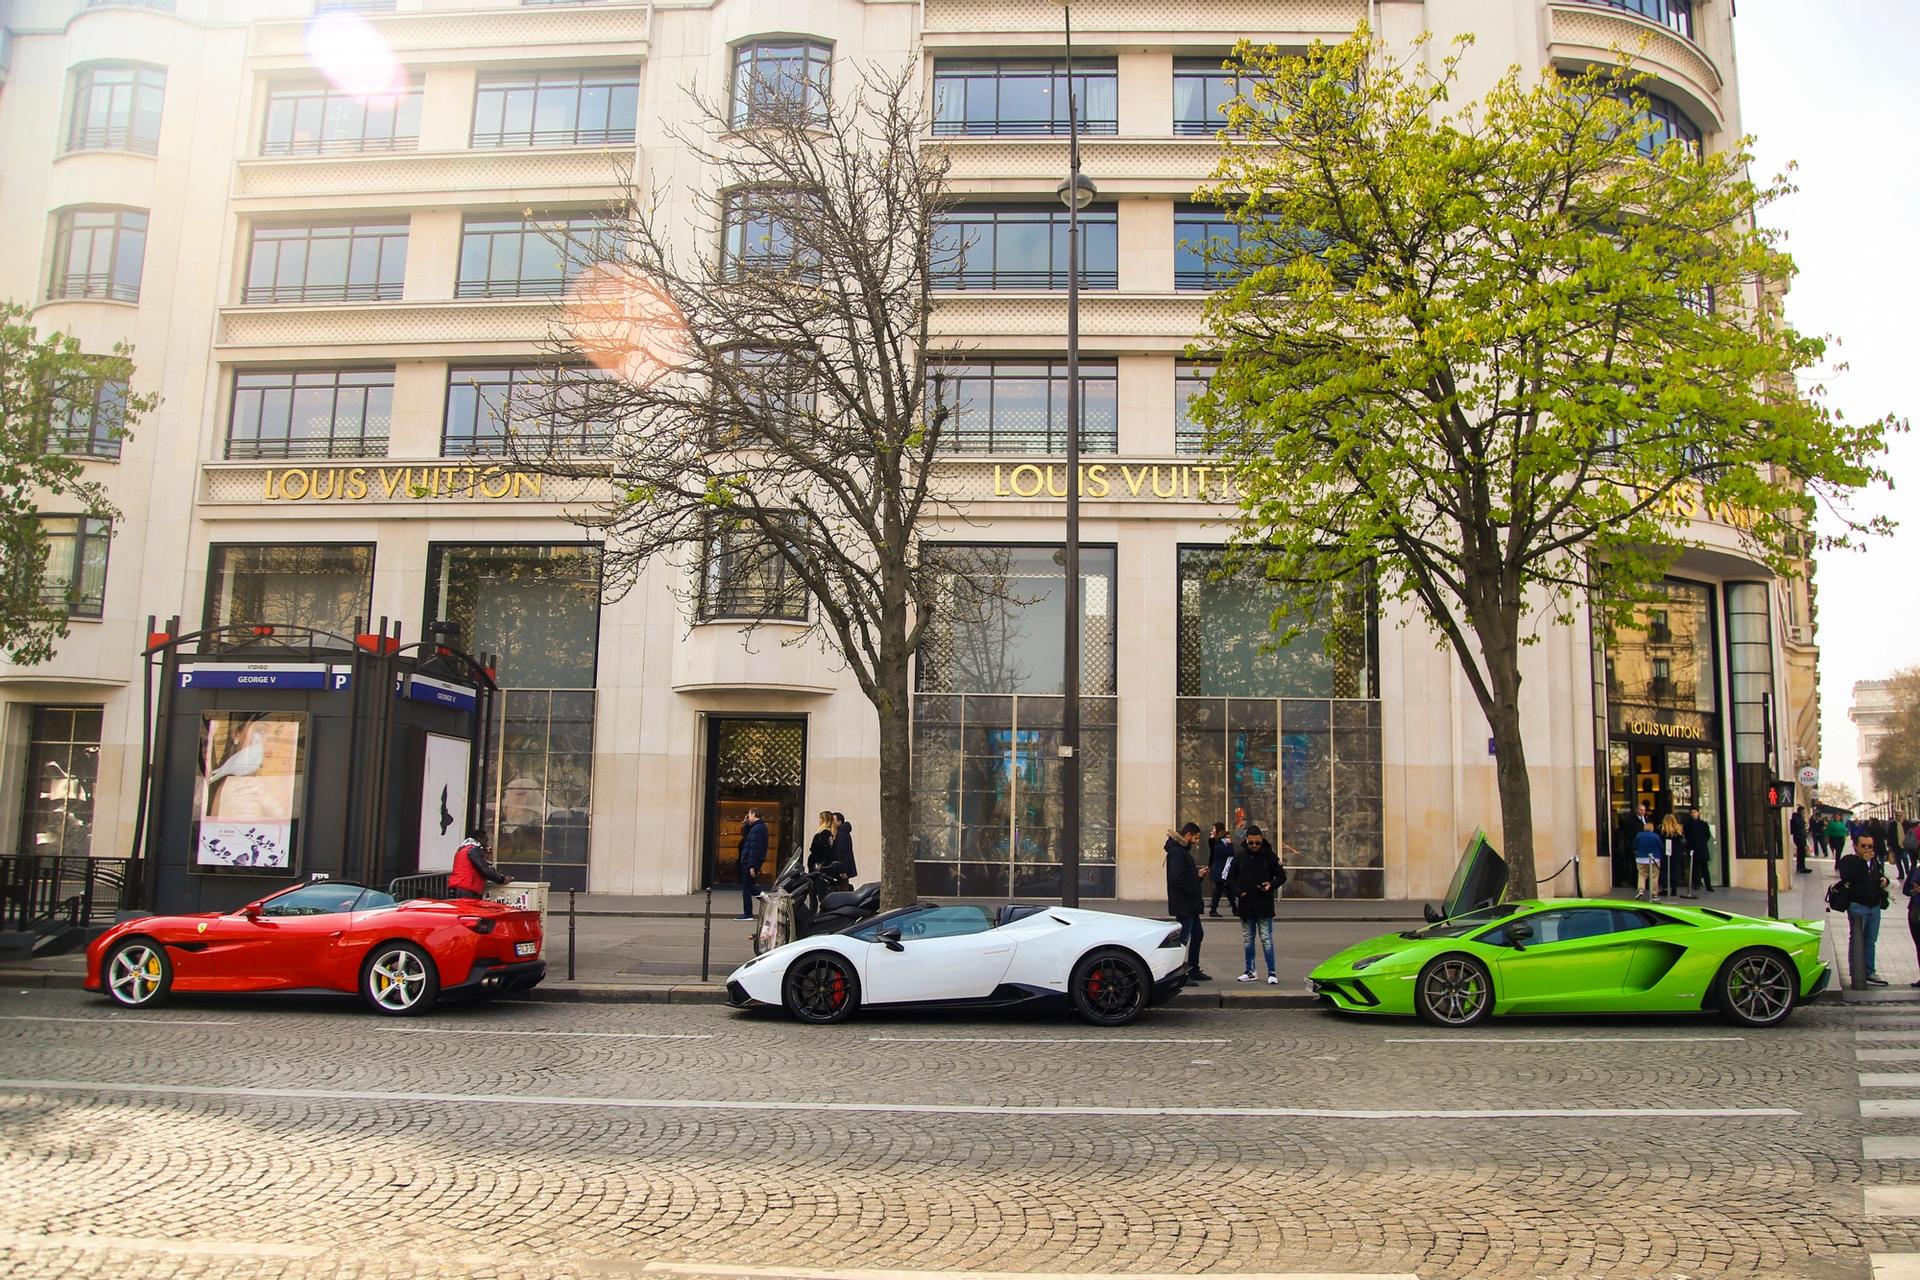 Three sports cars parked outside the Louis Vuitton store on the Champs-Élysées, Paris